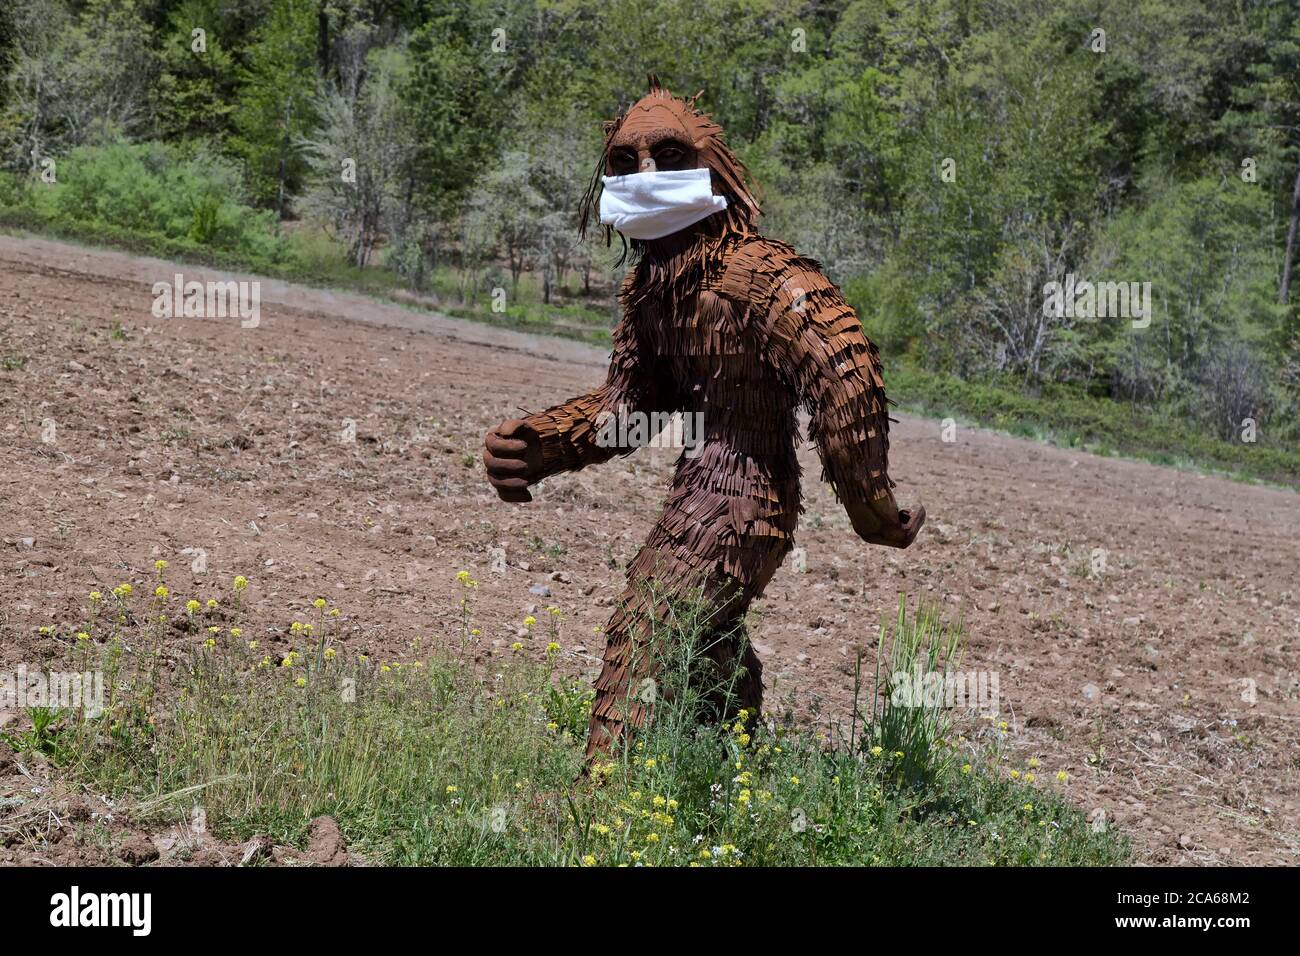 Bigfoot portant le masque antivirus COVID-19, passant par le champ agricole cultivé, forêt en arrière-plan. Folklore nord-américain. Banque D'Images